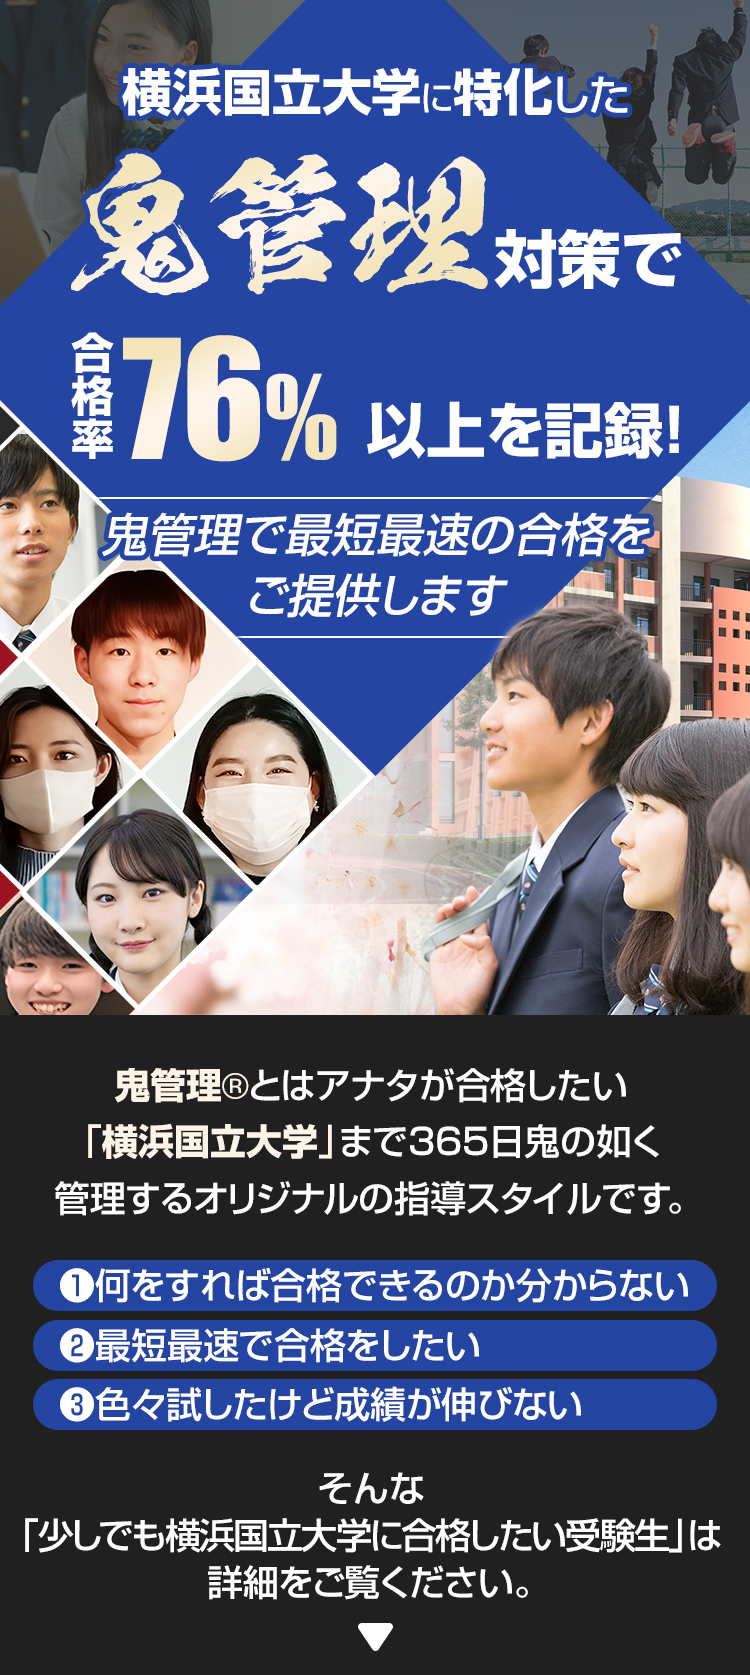 横浜国立大学に特化した鬼管理対策で合格率76％以上を記録